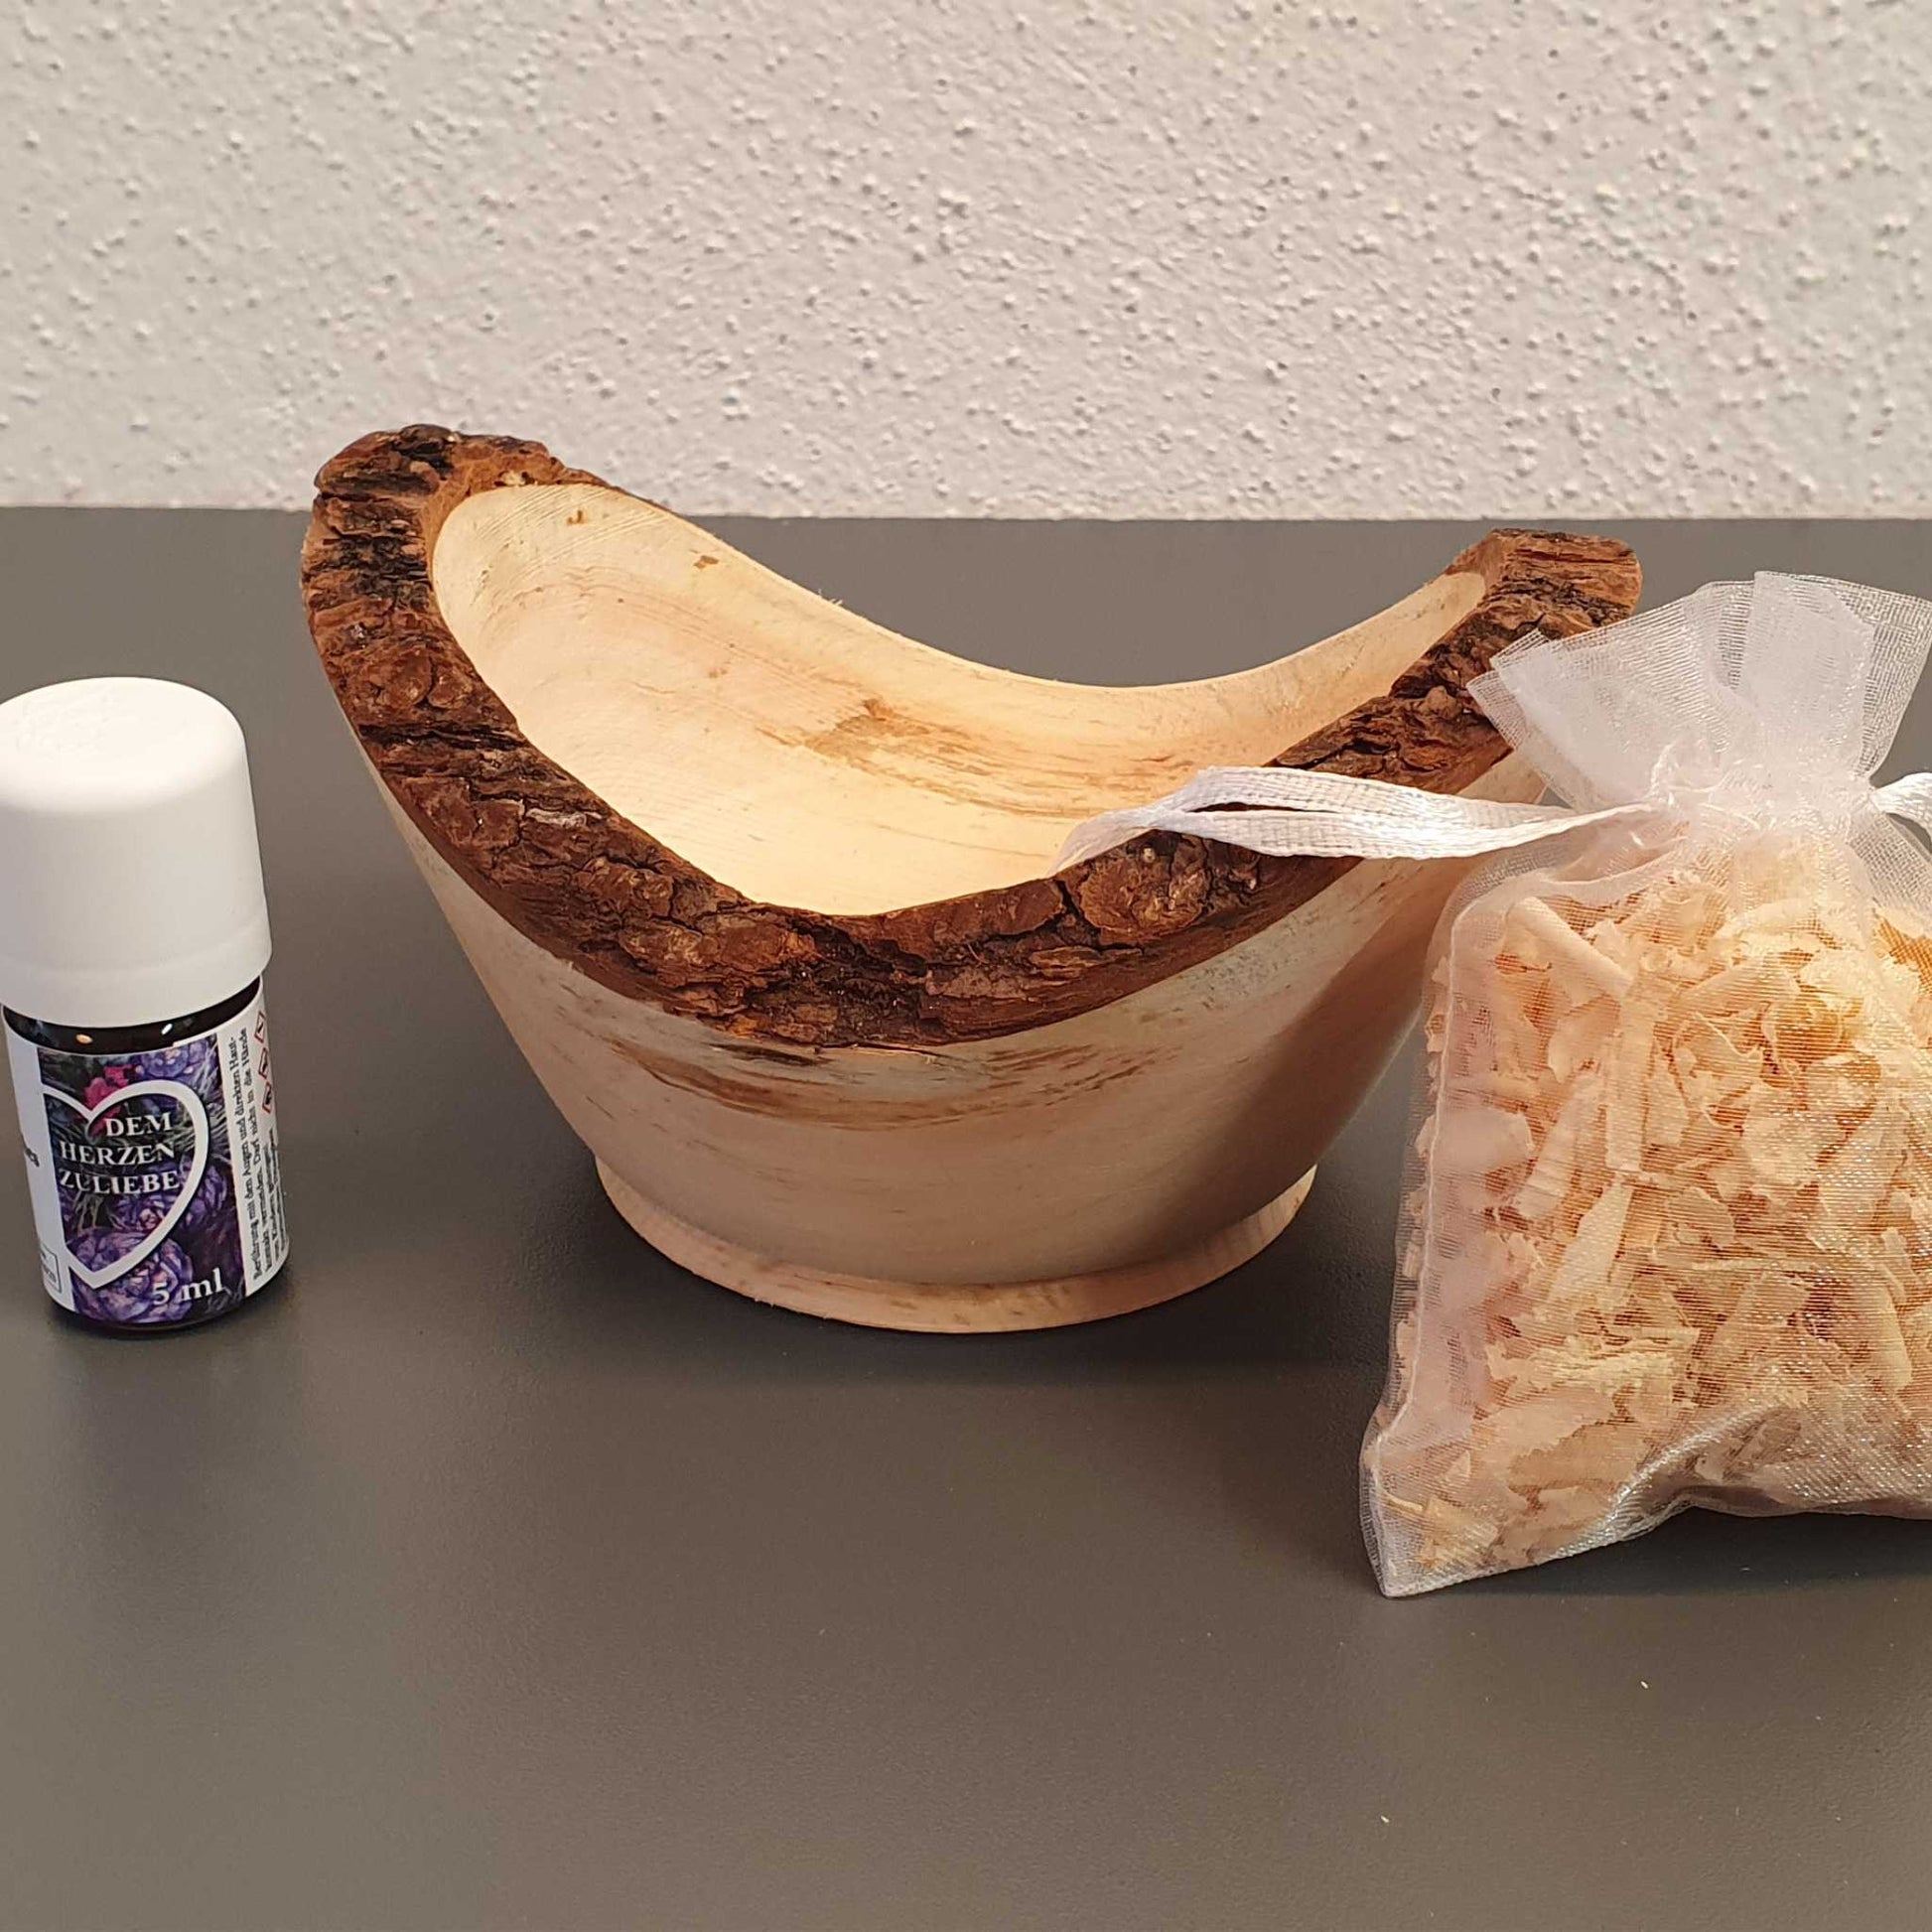 Zirbenholz Schüssel gedrechselt mit Zirbenspänen inkl. 5ml 100% naturreines ätherisches Zirbenöl - EdpaS